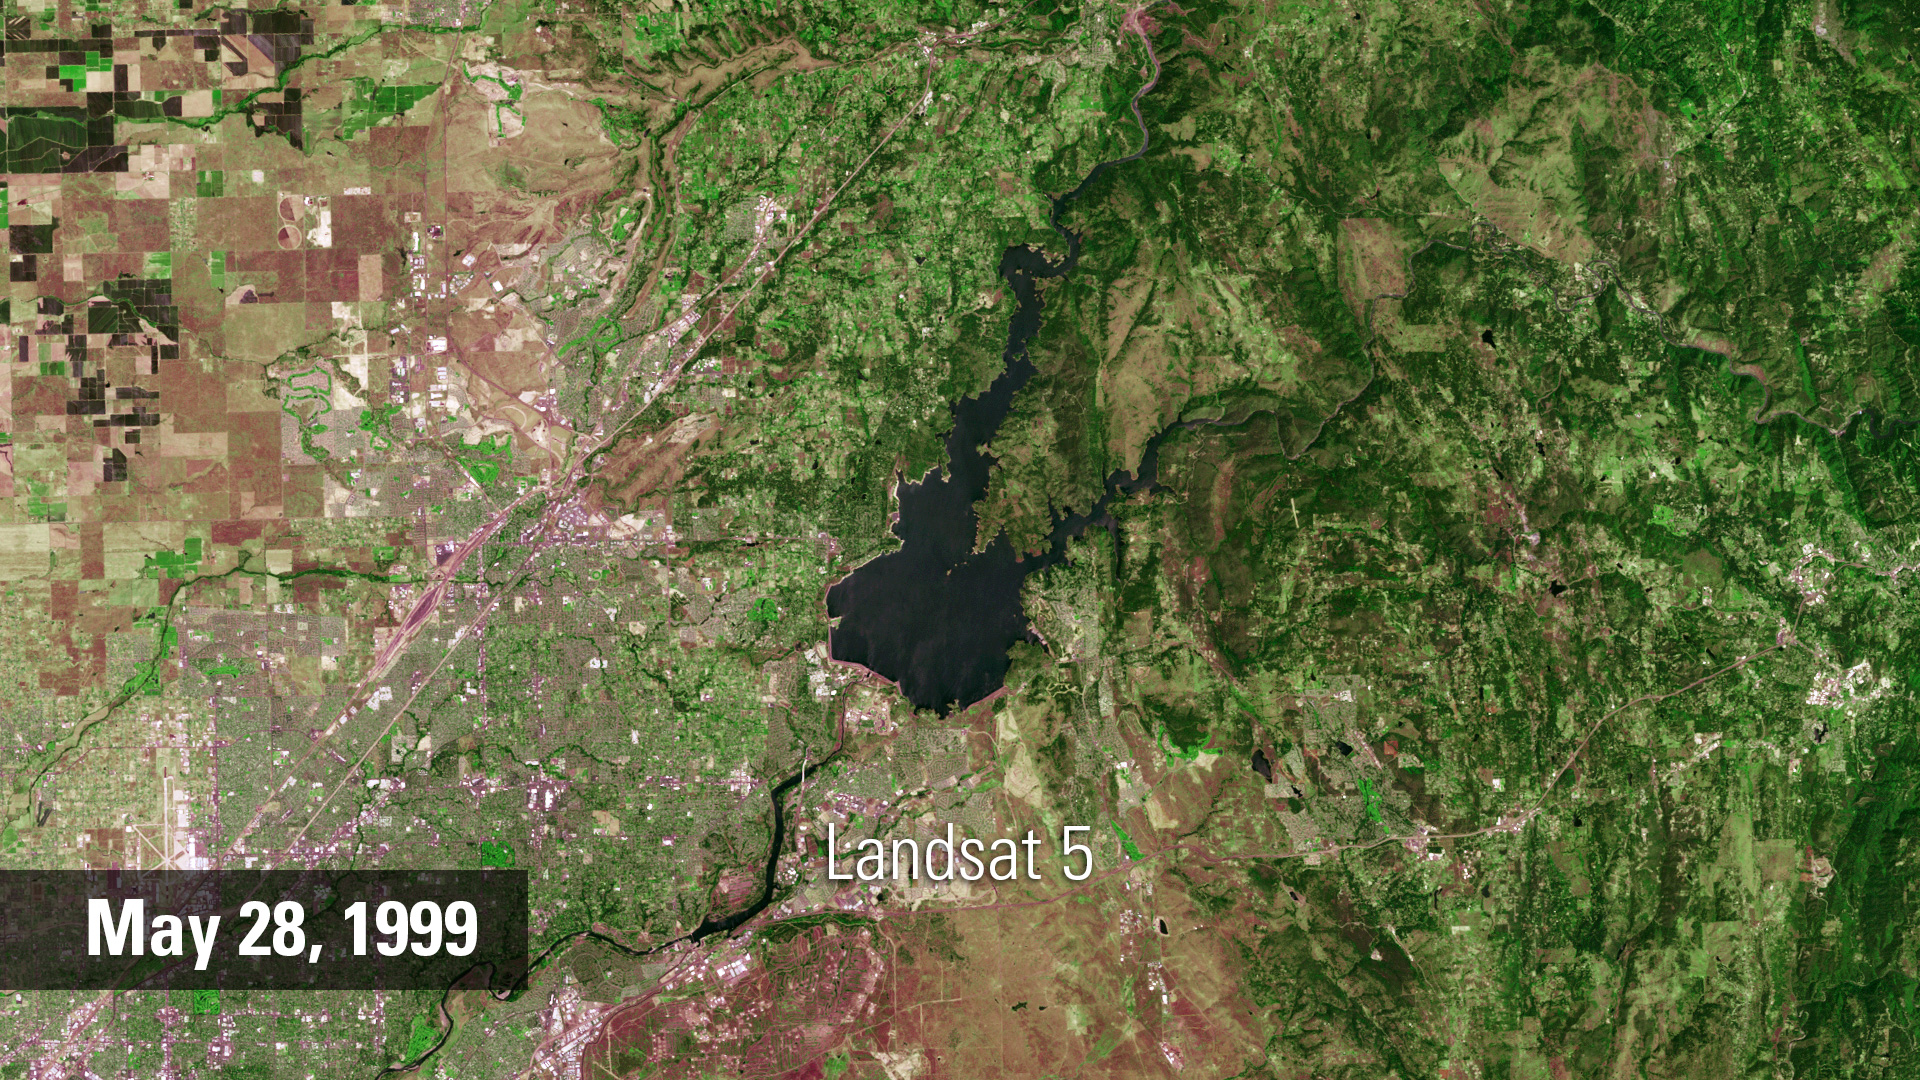 Color Landsat image of California reservoir in 1999